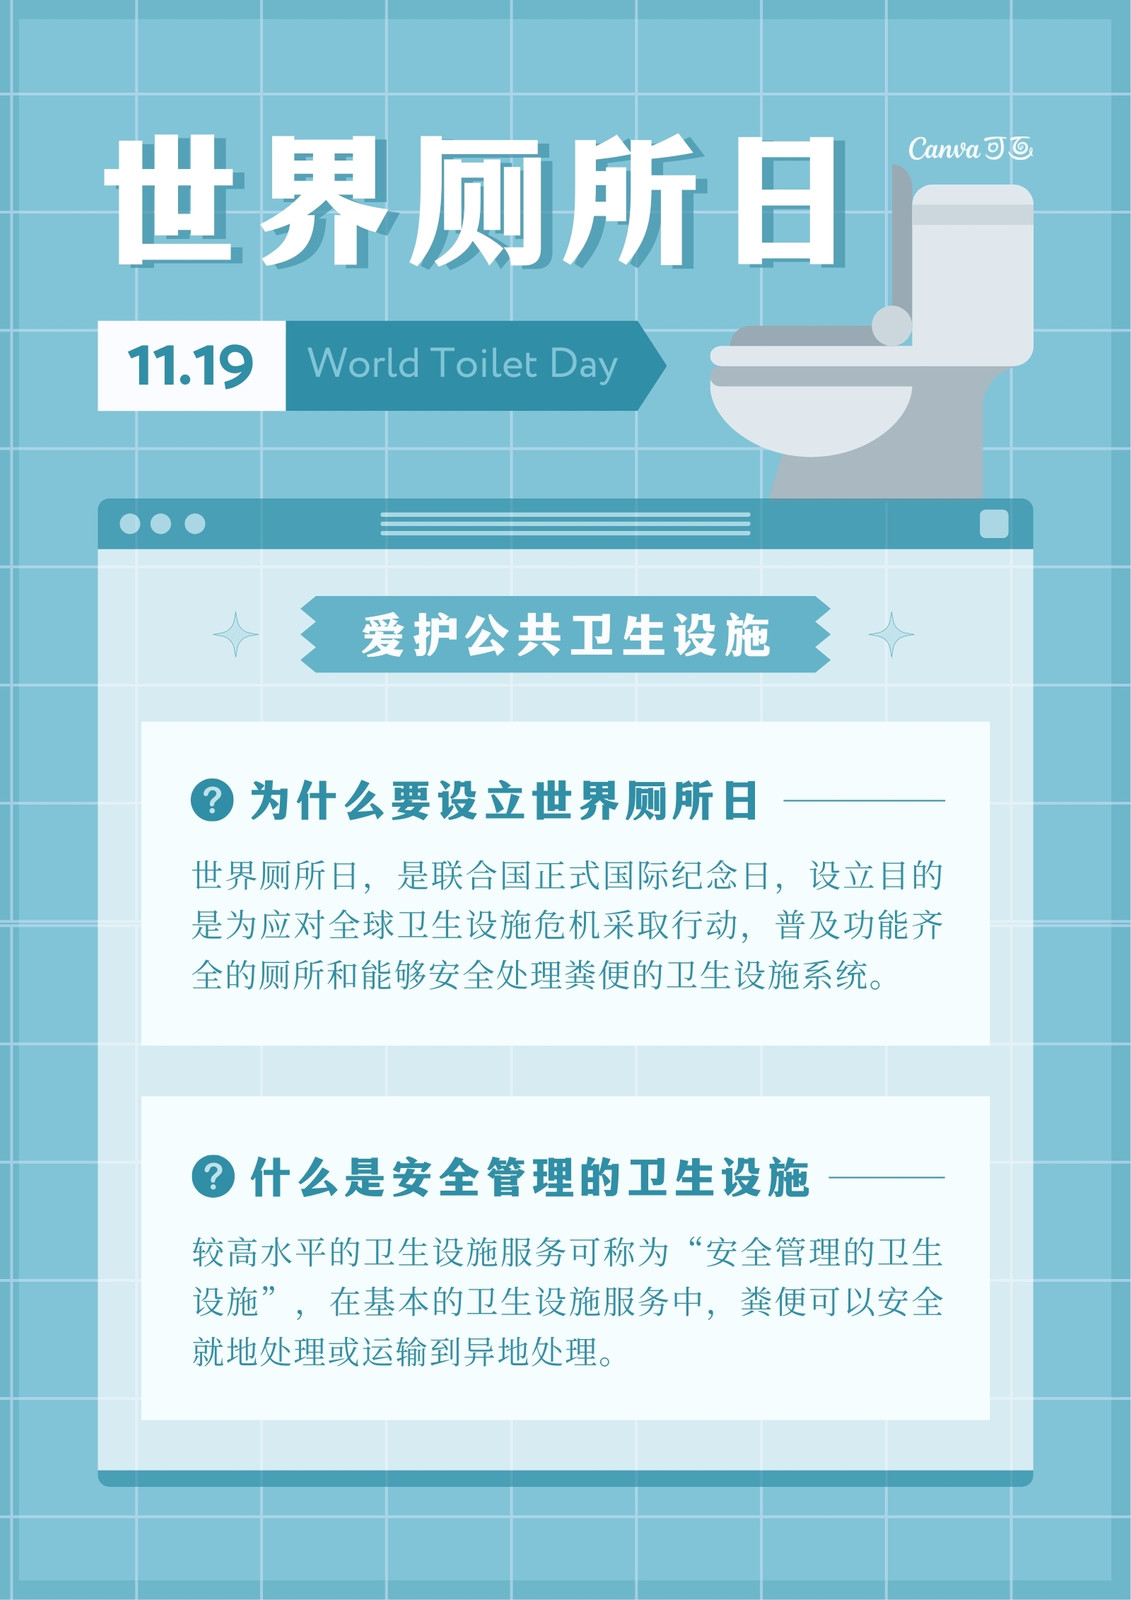 世界厕所日文明如厕公共卫知识科普实景生手机海报_图片模板素材-稿定设计